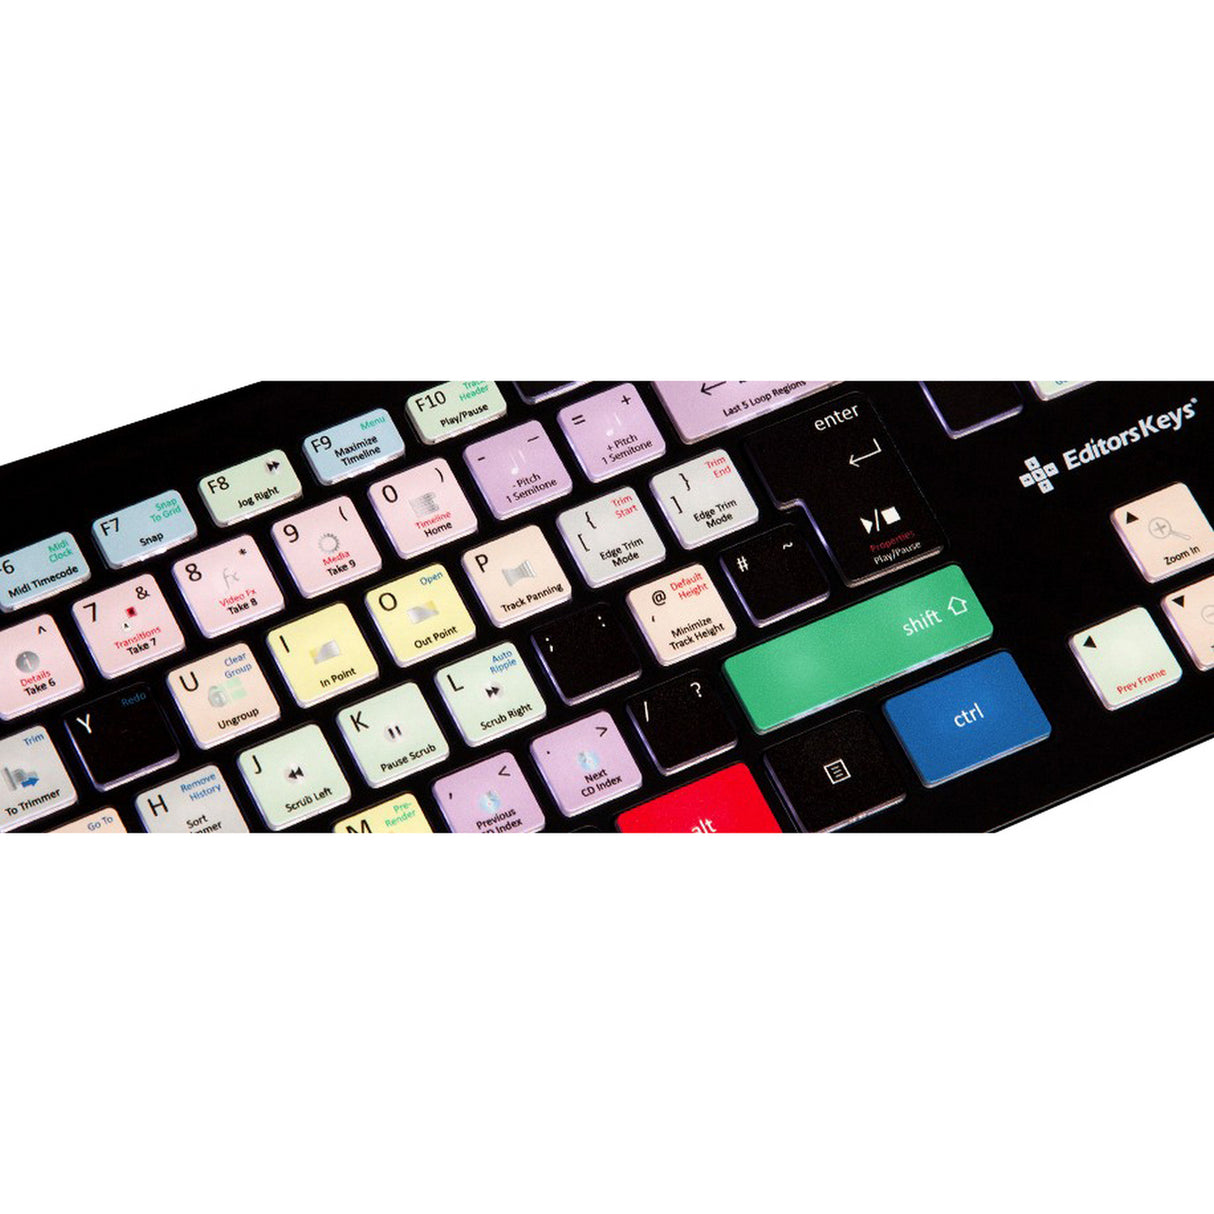 Editors Keys Sony Vegas Pro Keyboard | Backlit Keyboard for PC